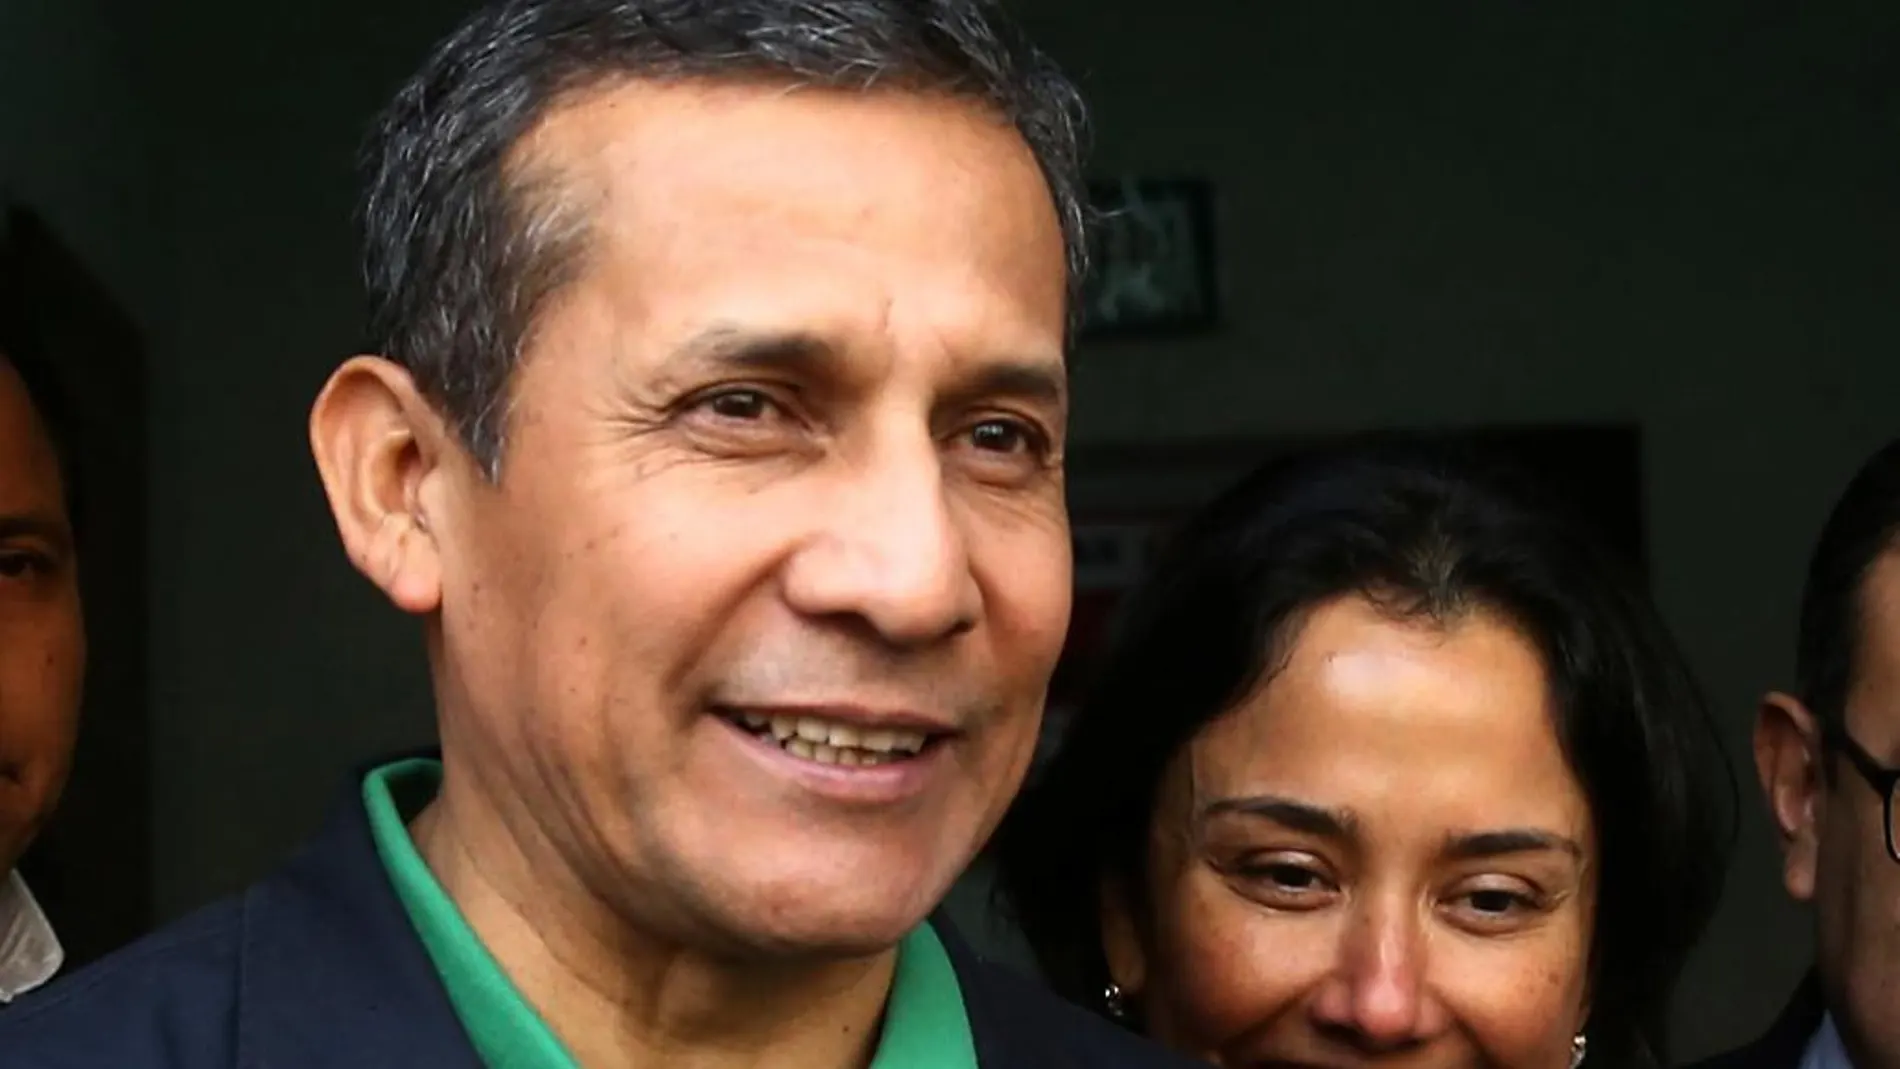 El expresidente peruano Ollanta Humala (2011-2016) y su esposa Nadine Heredia